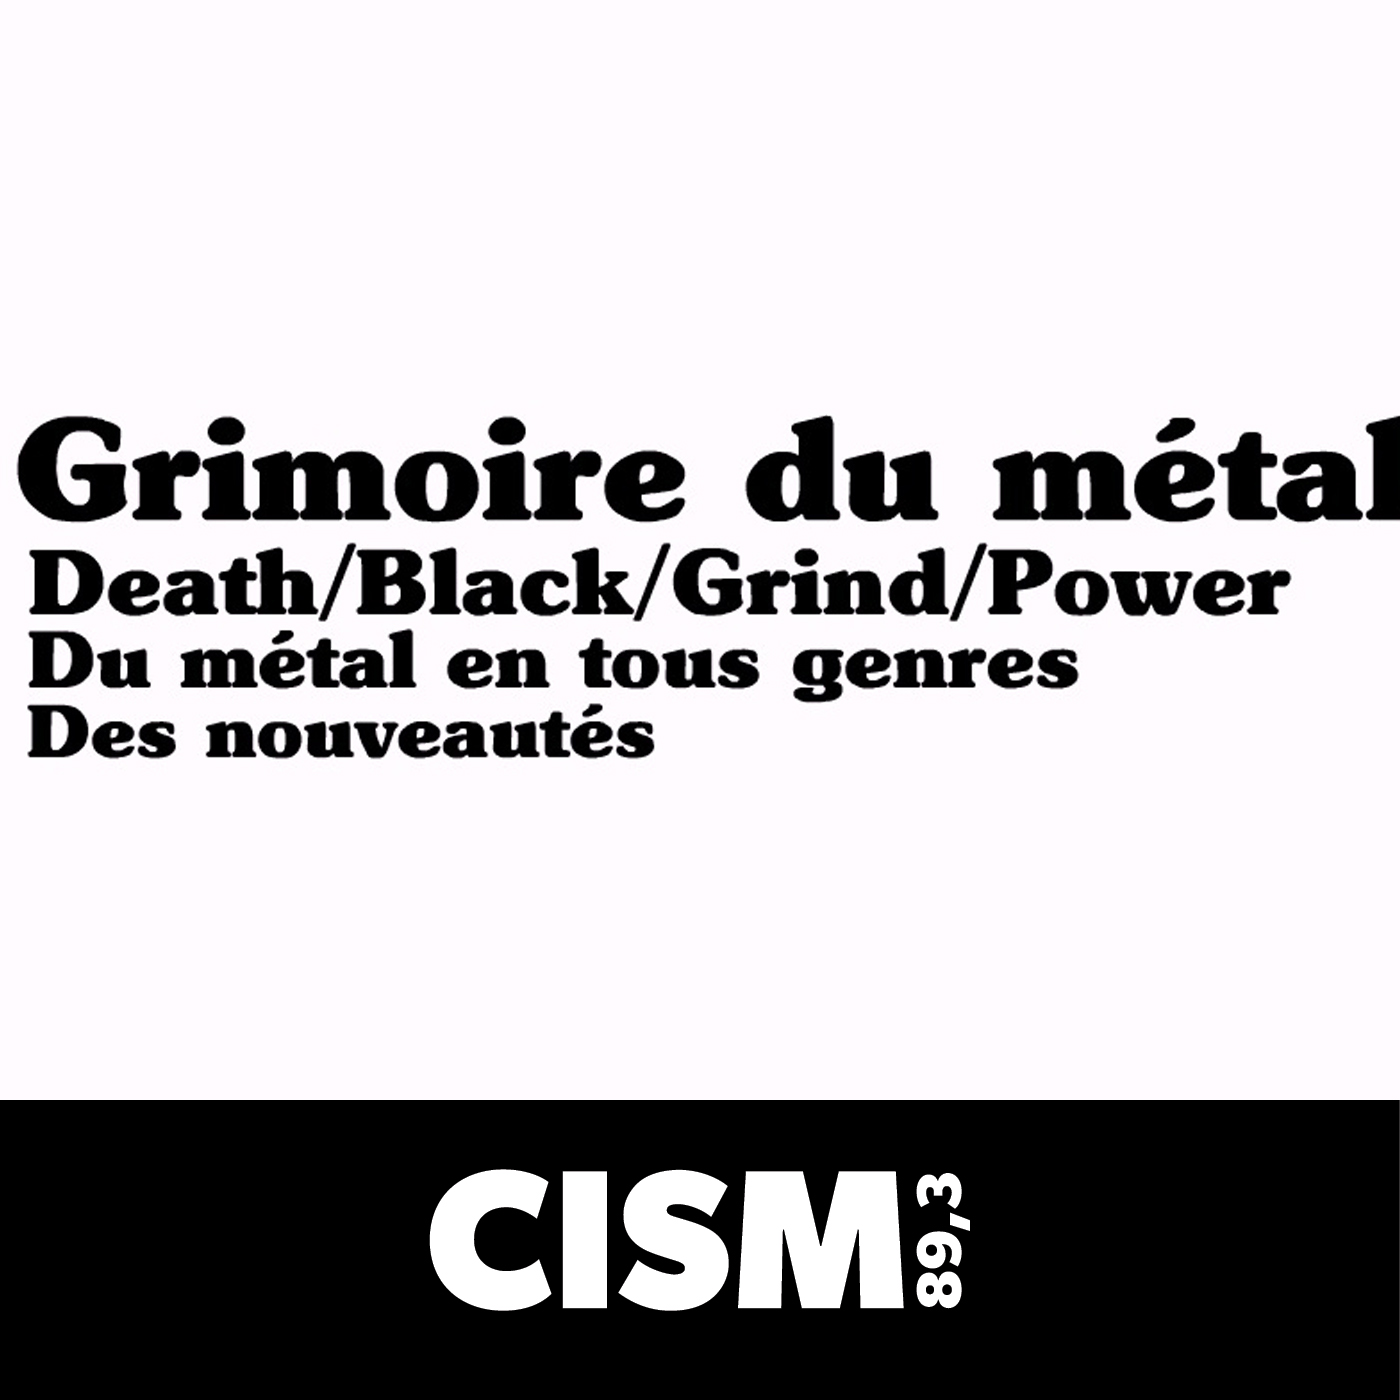 CISM 89.3 : Le grimoire du métal